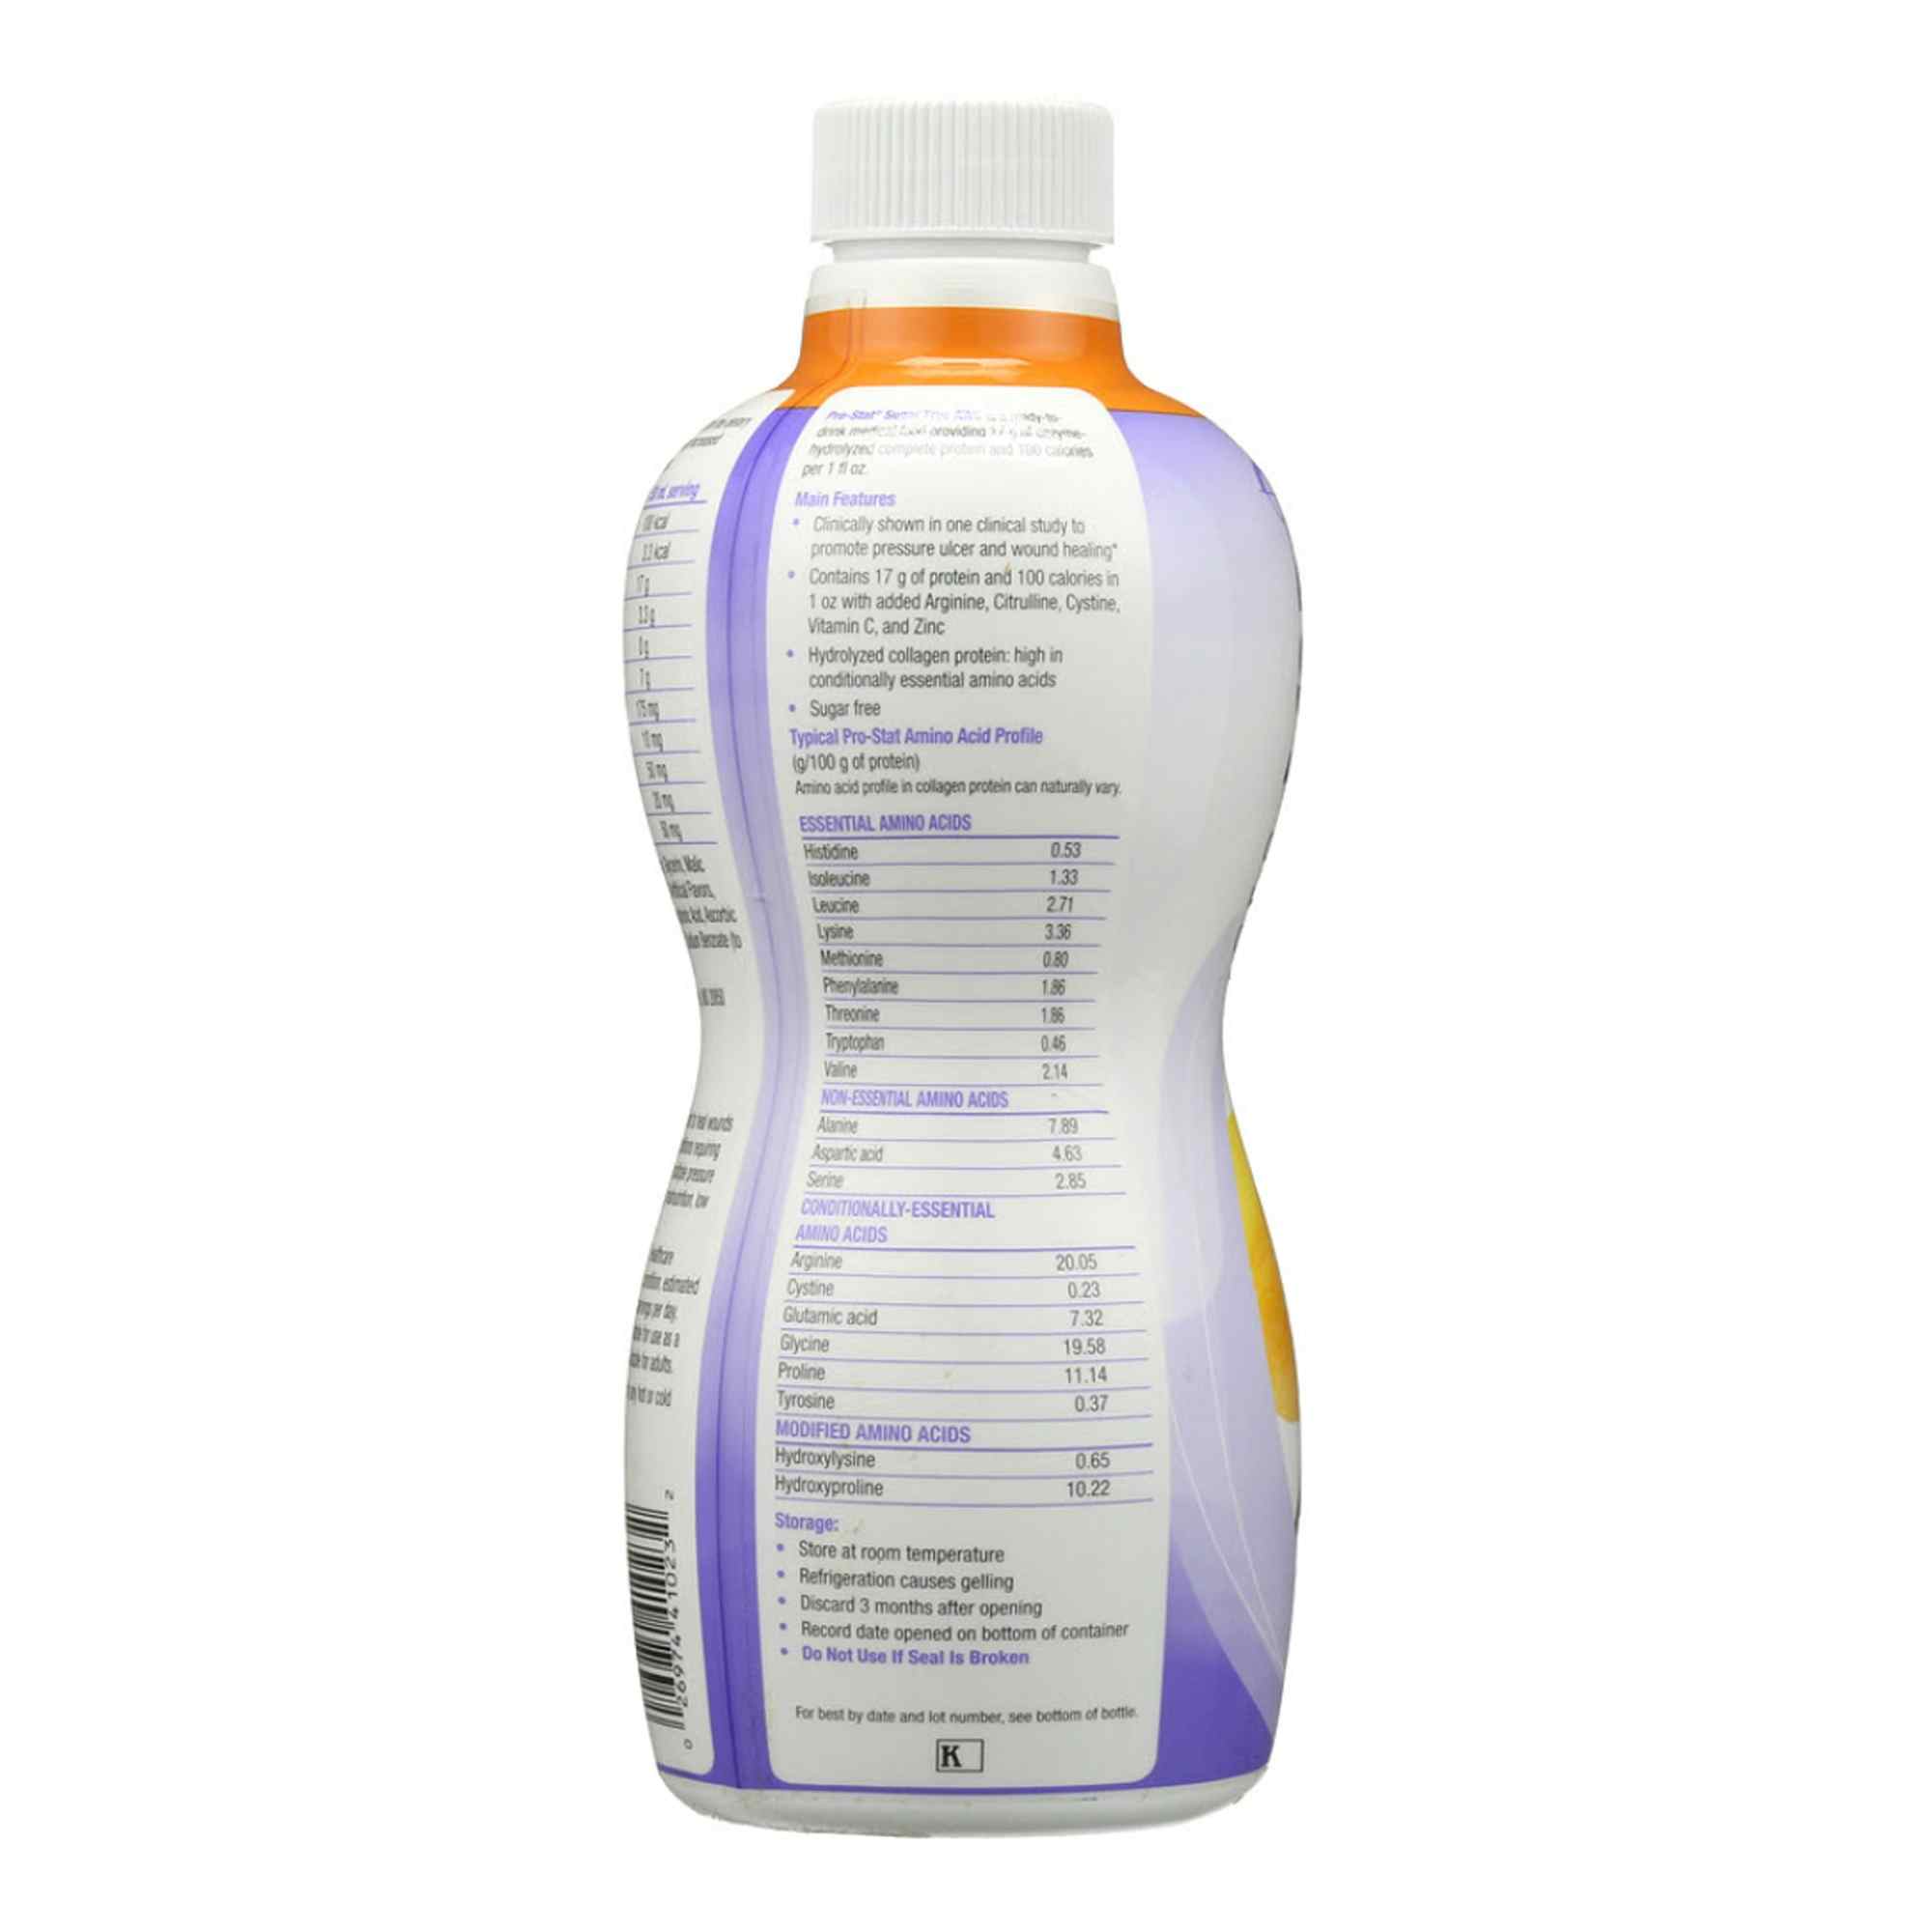 Nutricia Pro-Stat Sugar Free AWC Complete Liquid Protien, Bottle, 30 oz., Citrus Splash, 78383, 1 Bottle